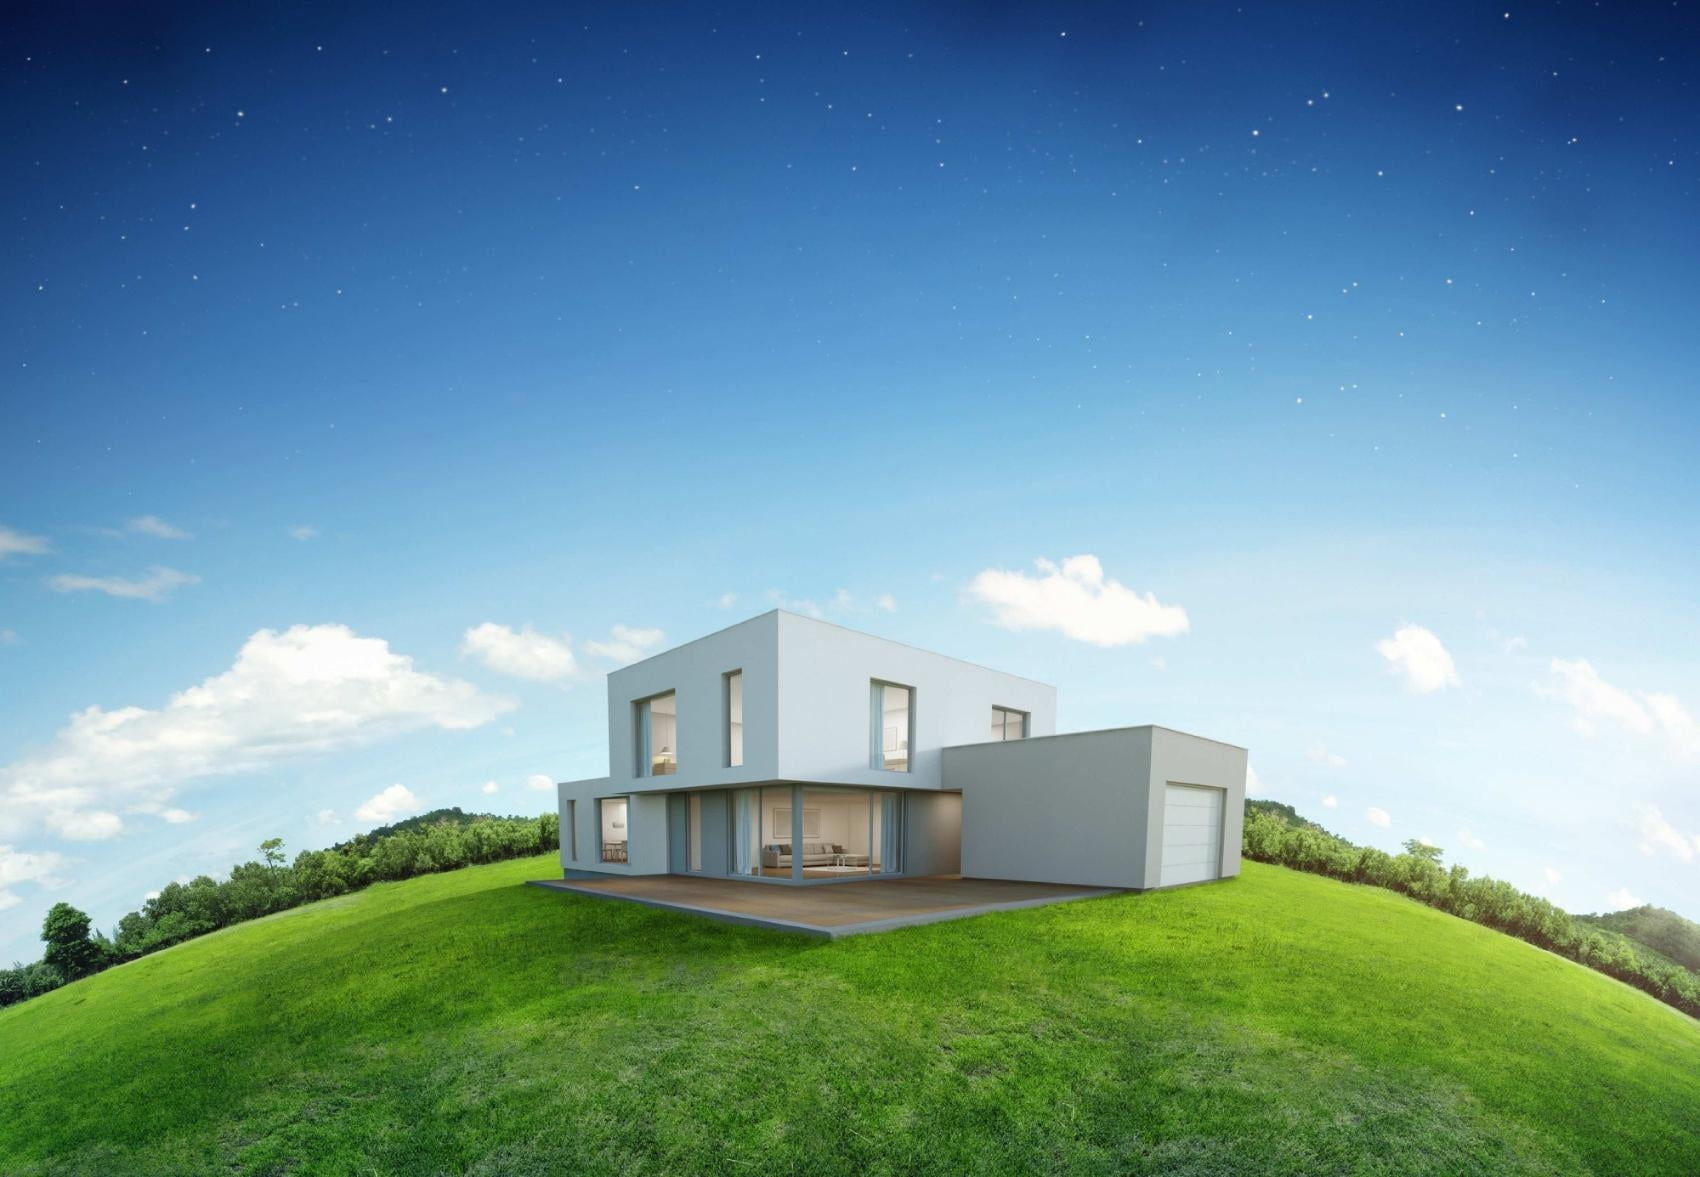 dom pasywny w otoczeniu zielonej trawy i z niebieskim niebem w tle